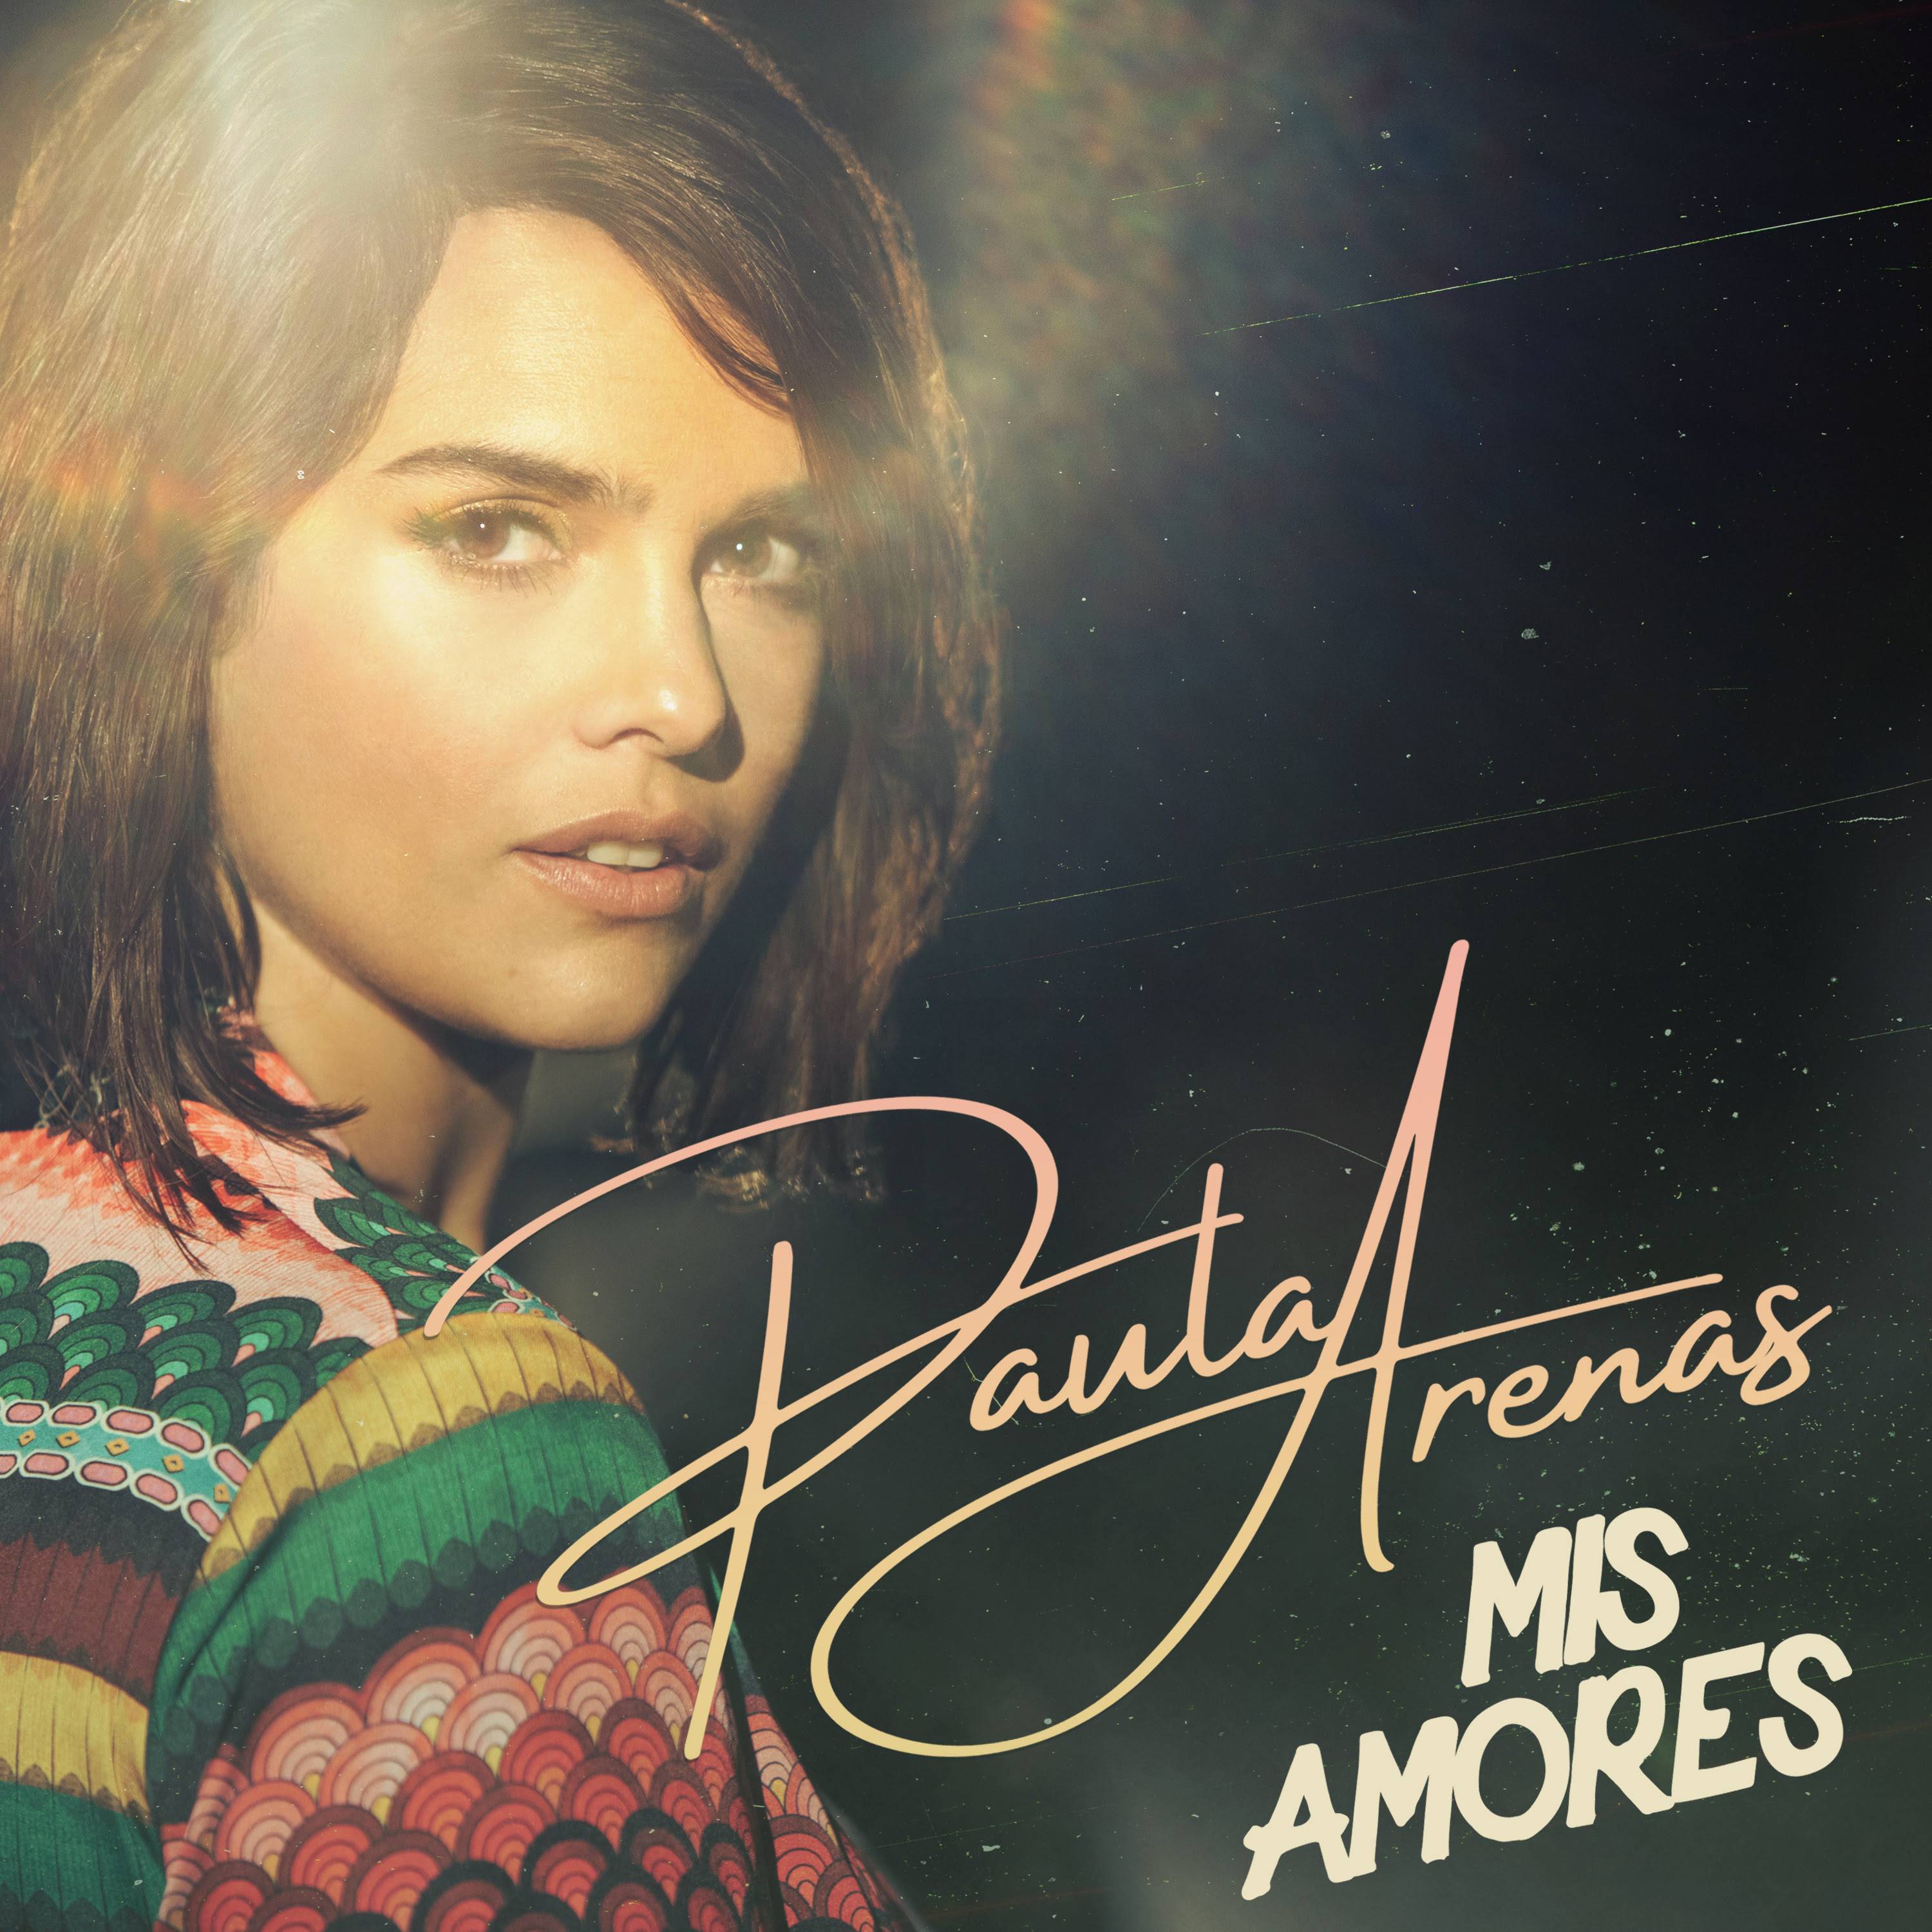 Paula Arenas comparte su ep “Mis amores”